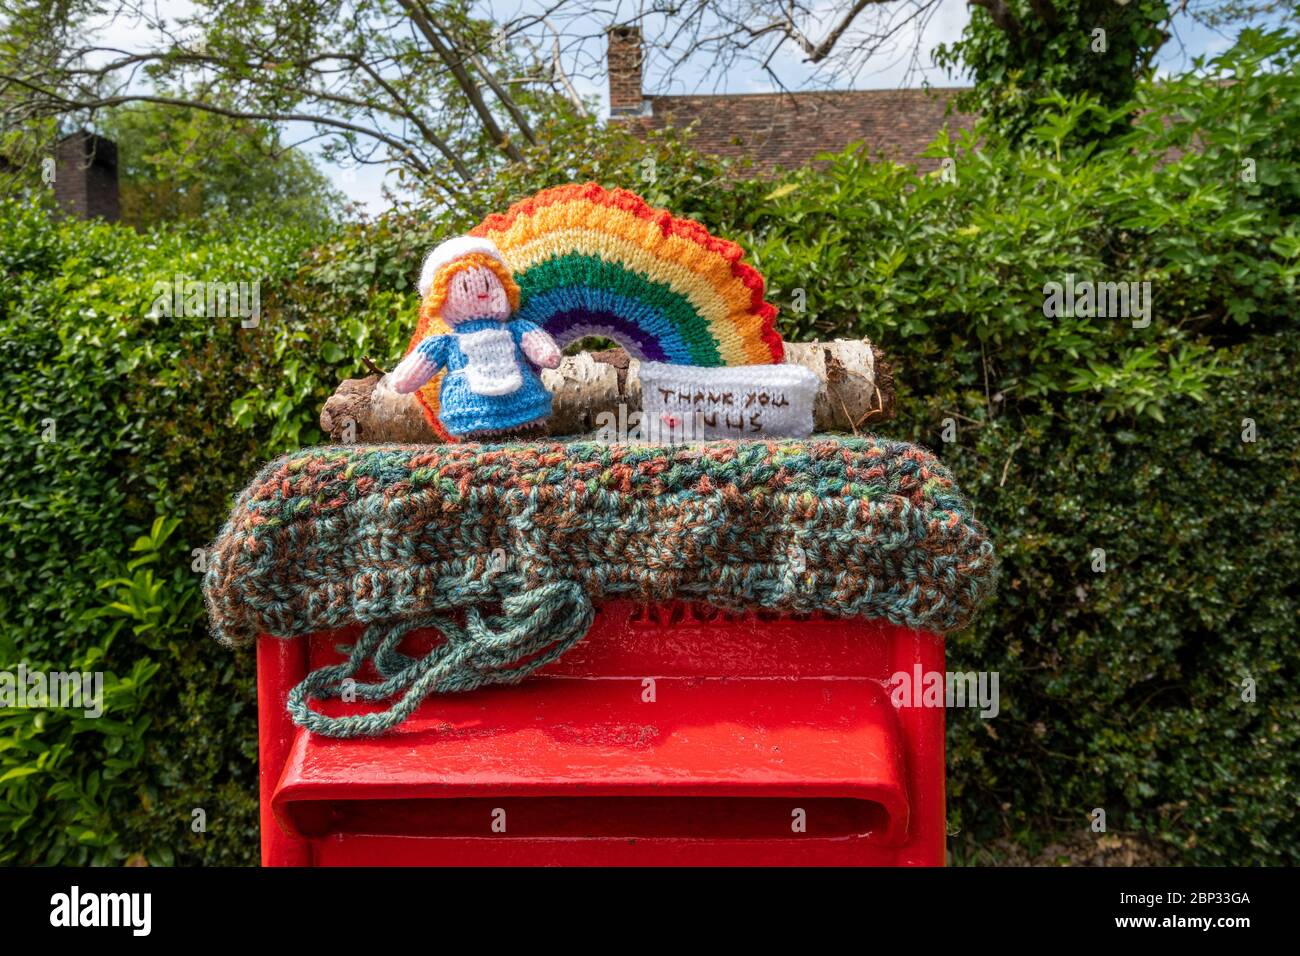 Personnage tricoté représentant une infirmière au-dessus d'une boîte postale dans le village West End, Surrey, Royaume-Uni, pendant la pandémie de covid-19 du coronavirus en 2020 Banque D'Images